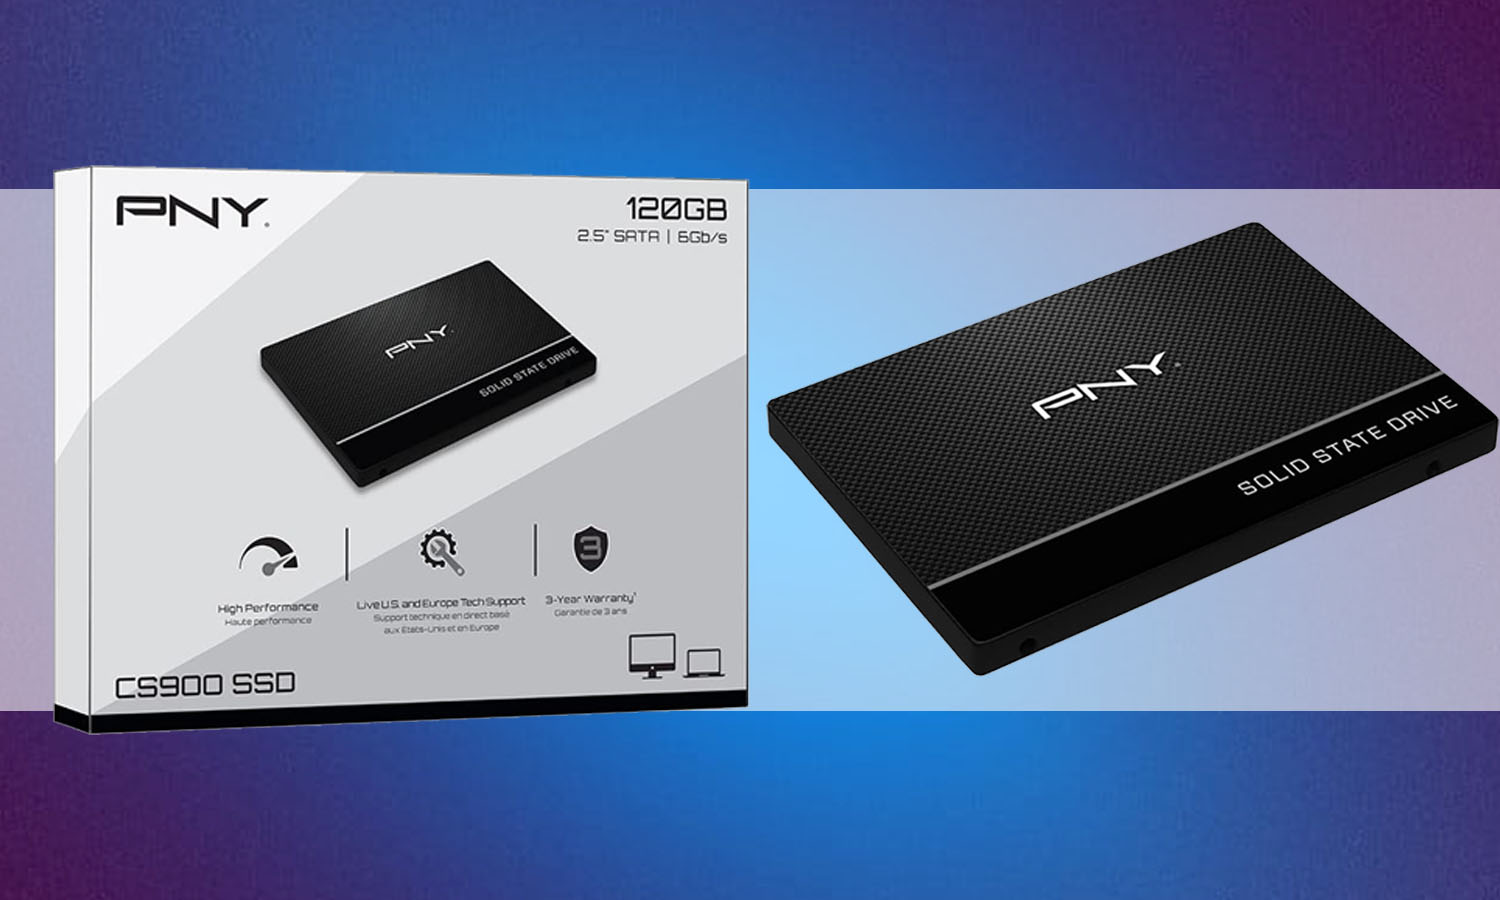 CS900 SSD Interne 120Go : les offres disponibles